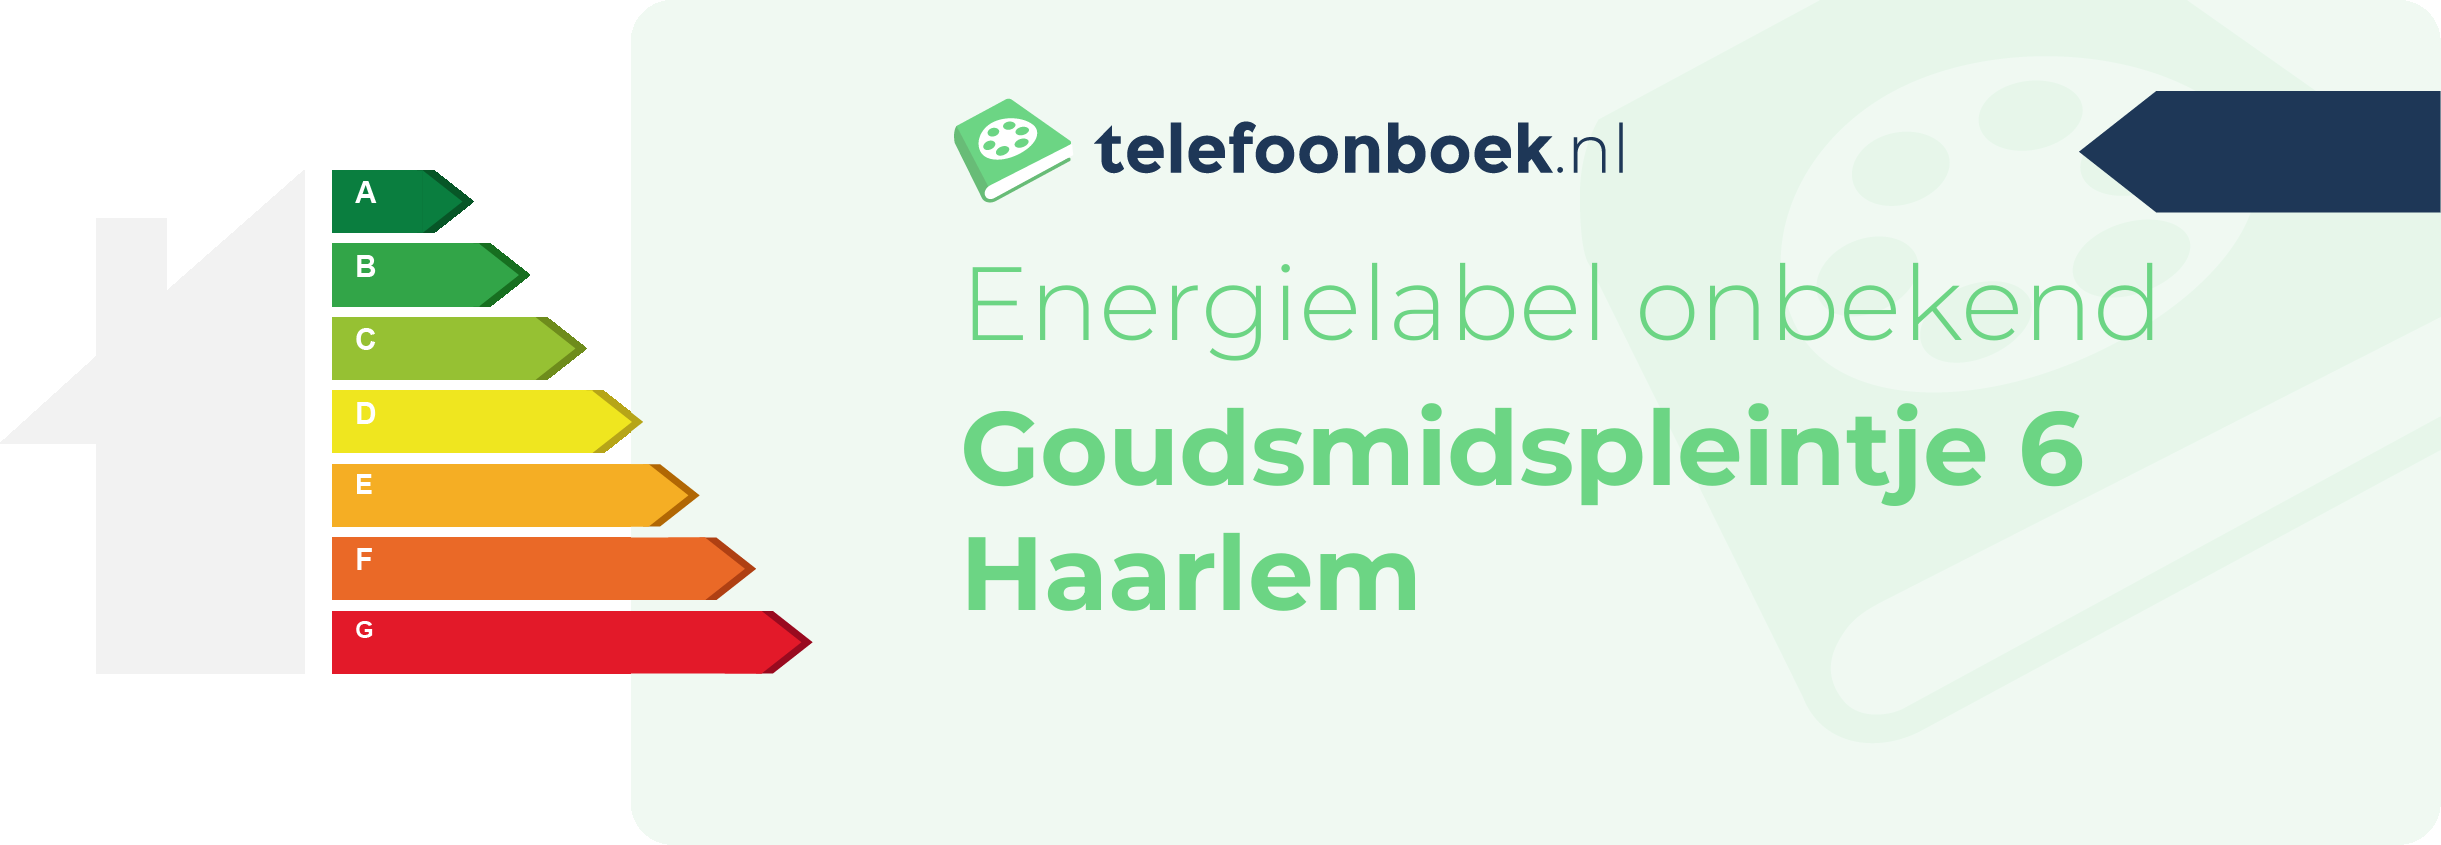 Energielabel Goudsmidspleintje 6 Haarlem